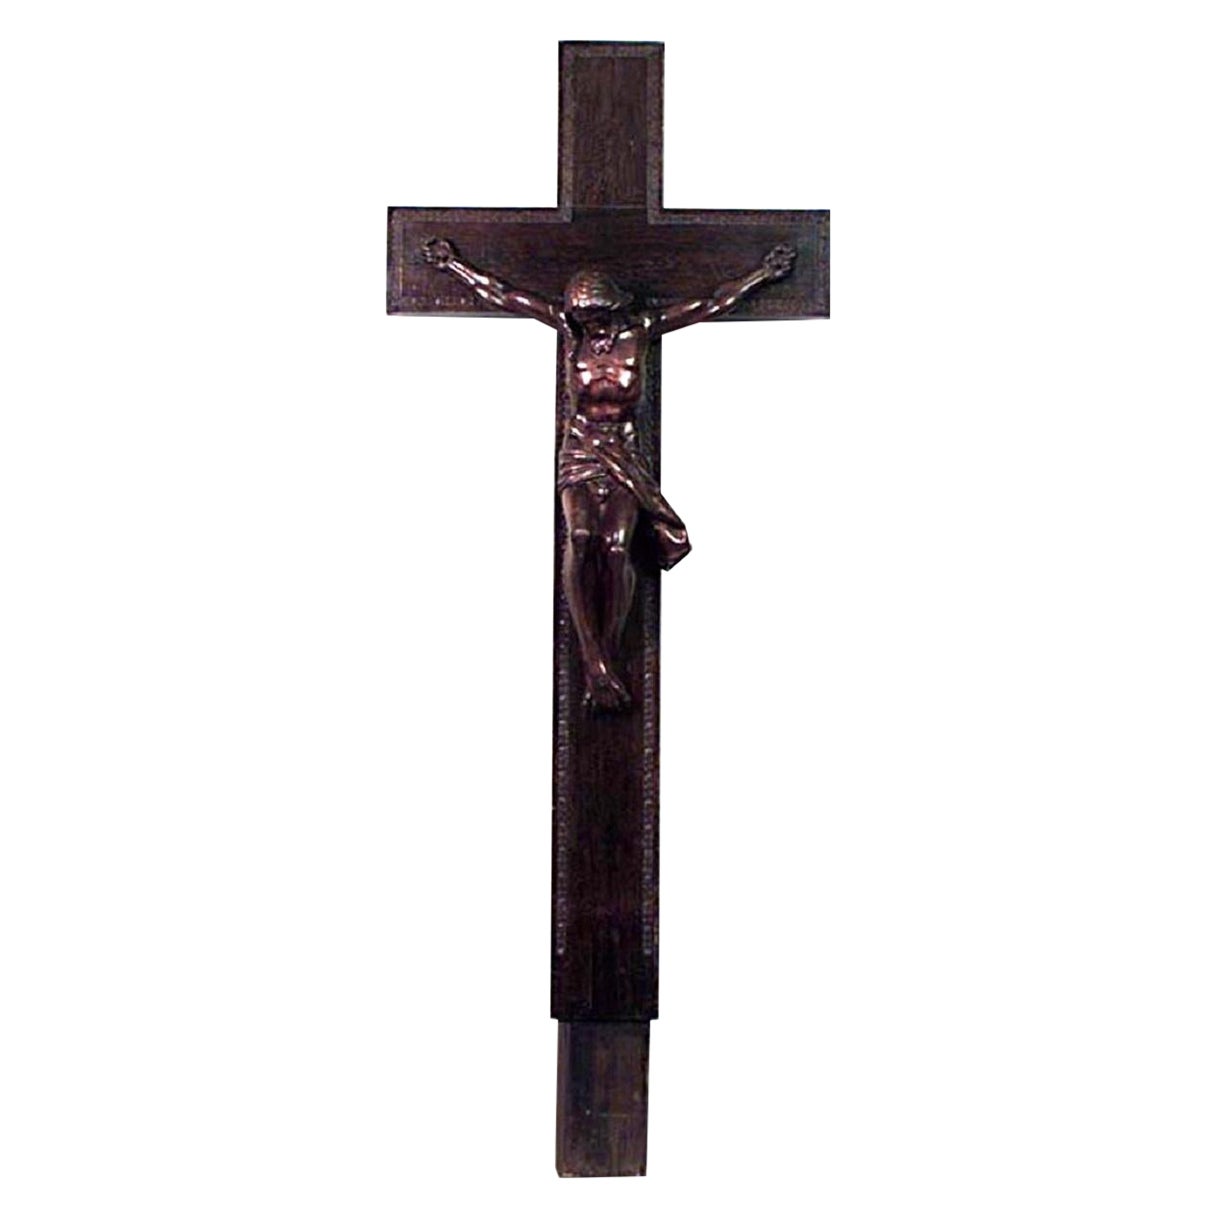 Religiöses Kruzifix aus der italienischen Renaissance des 20. Jahrhunderts